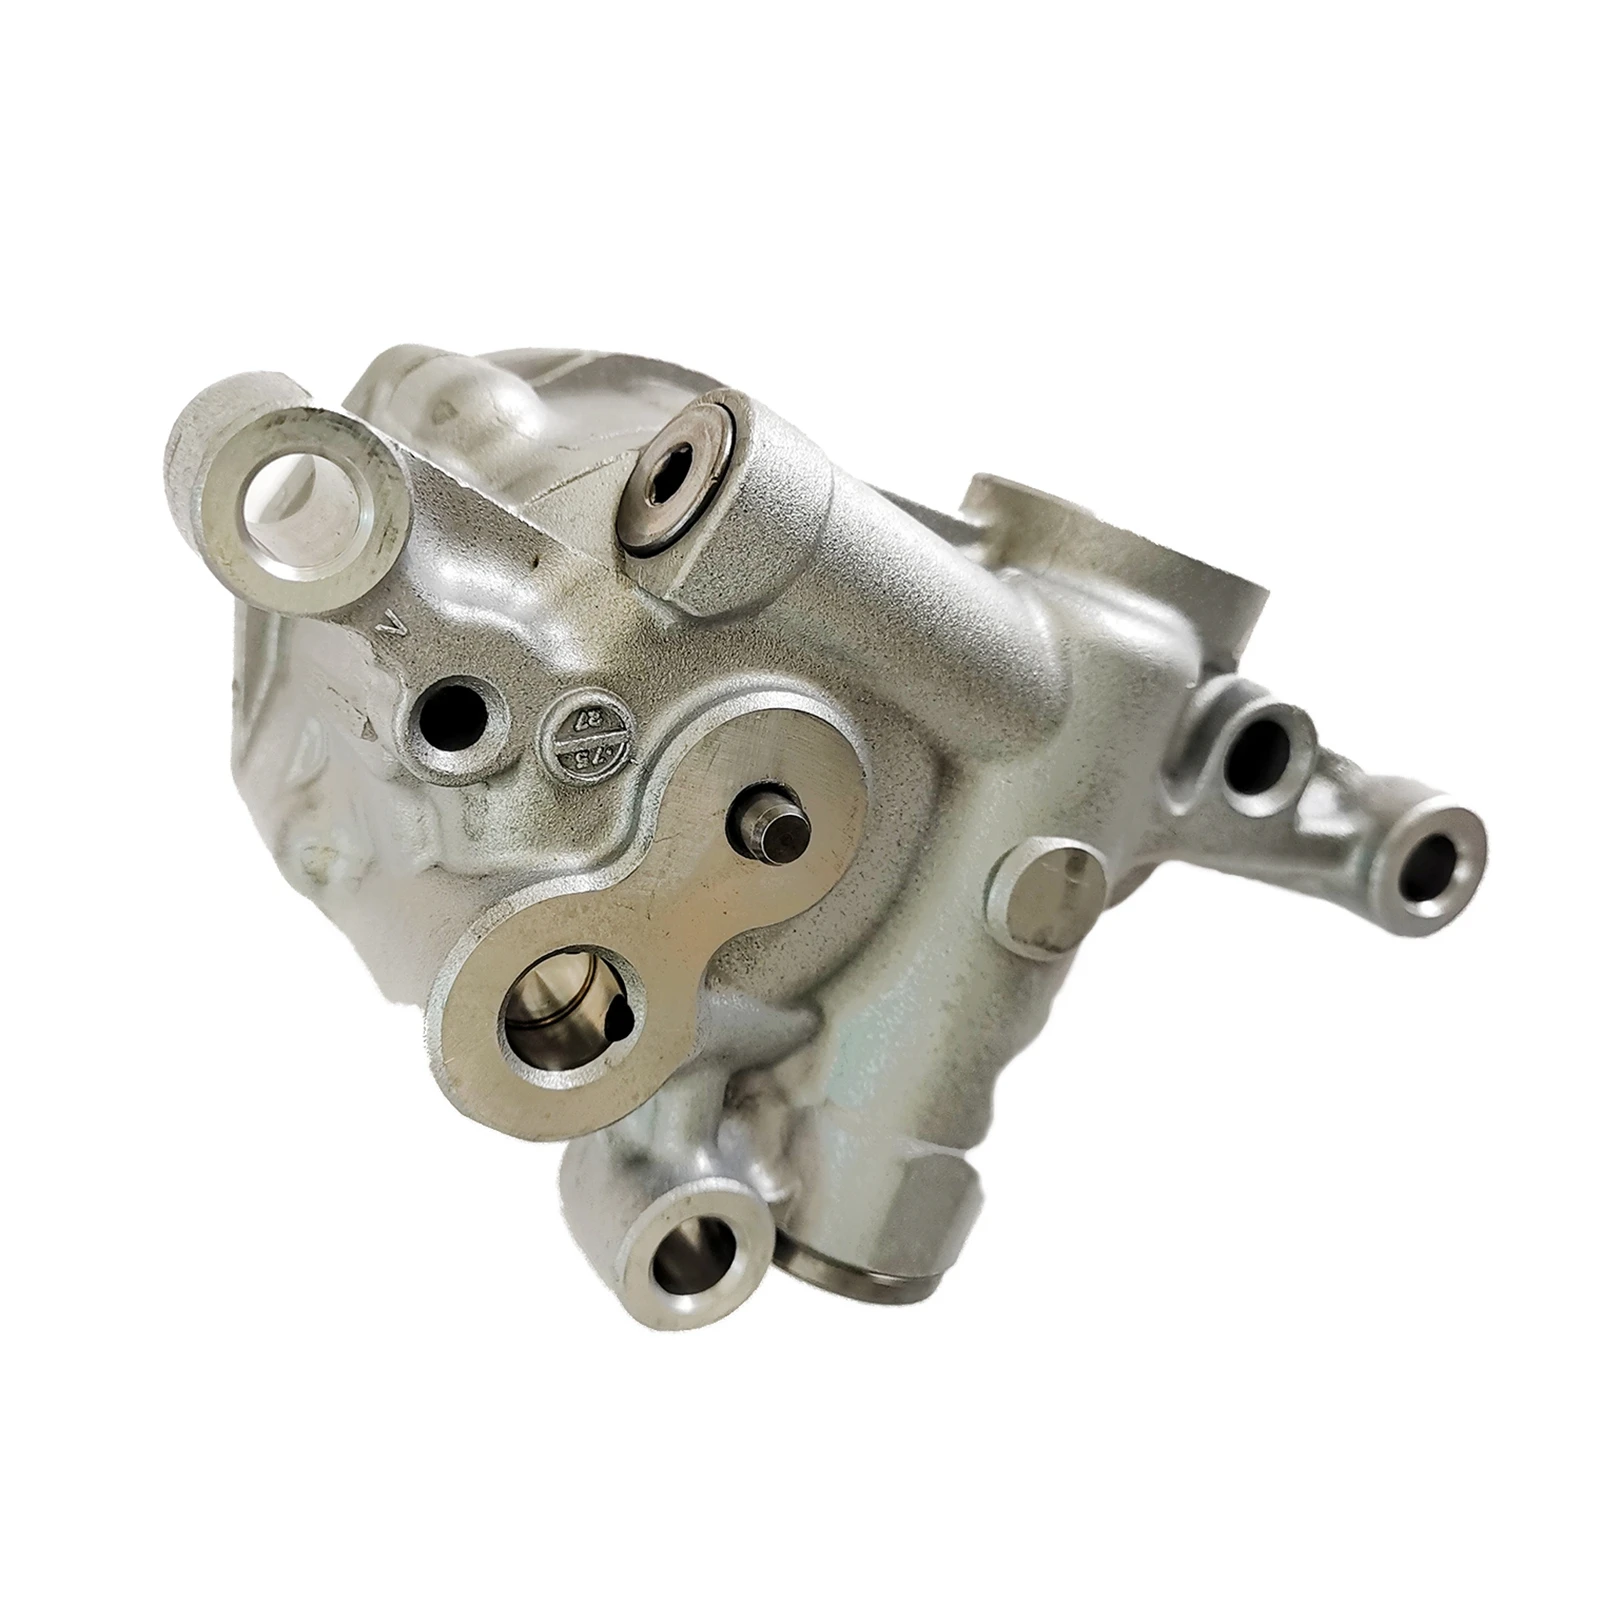 Transmission Oil Pump Jf015E RE0 Pump Assembly  12-15 L4 1.6L 1.8L Automotive Parts Replacement Drive Train 